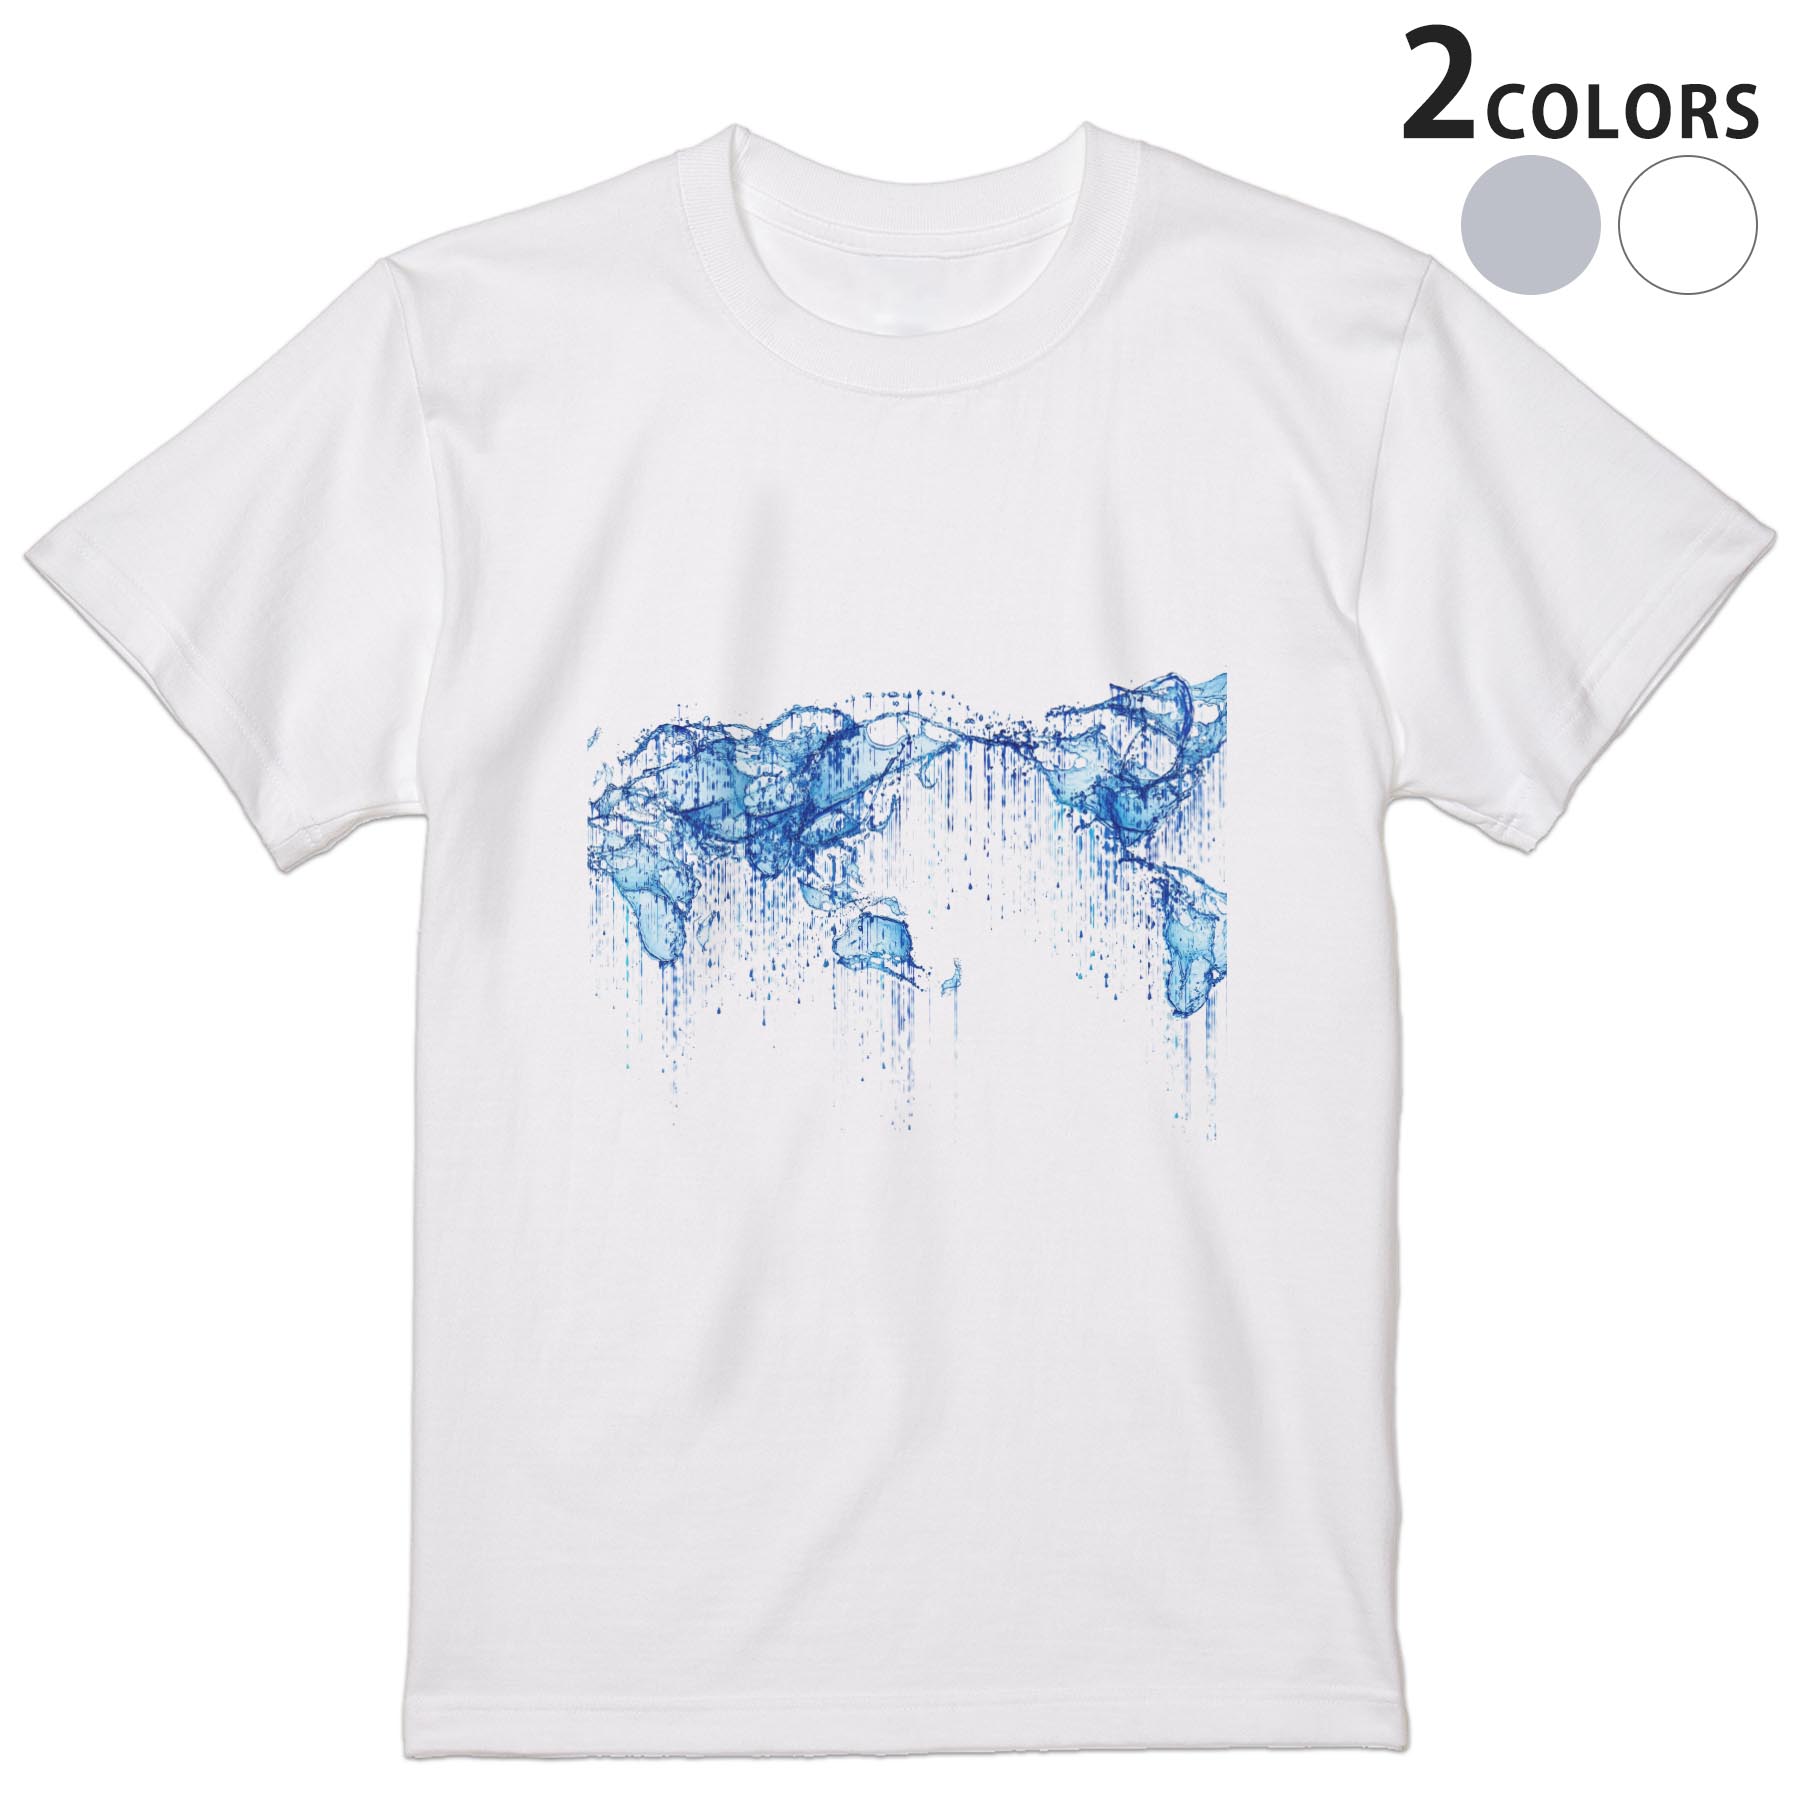 Tシャツ メンズ 半袖 ホワイト グレー デザイン S M L XL 2XL Tシャツ ティーシャツ T shirt 015979 世..